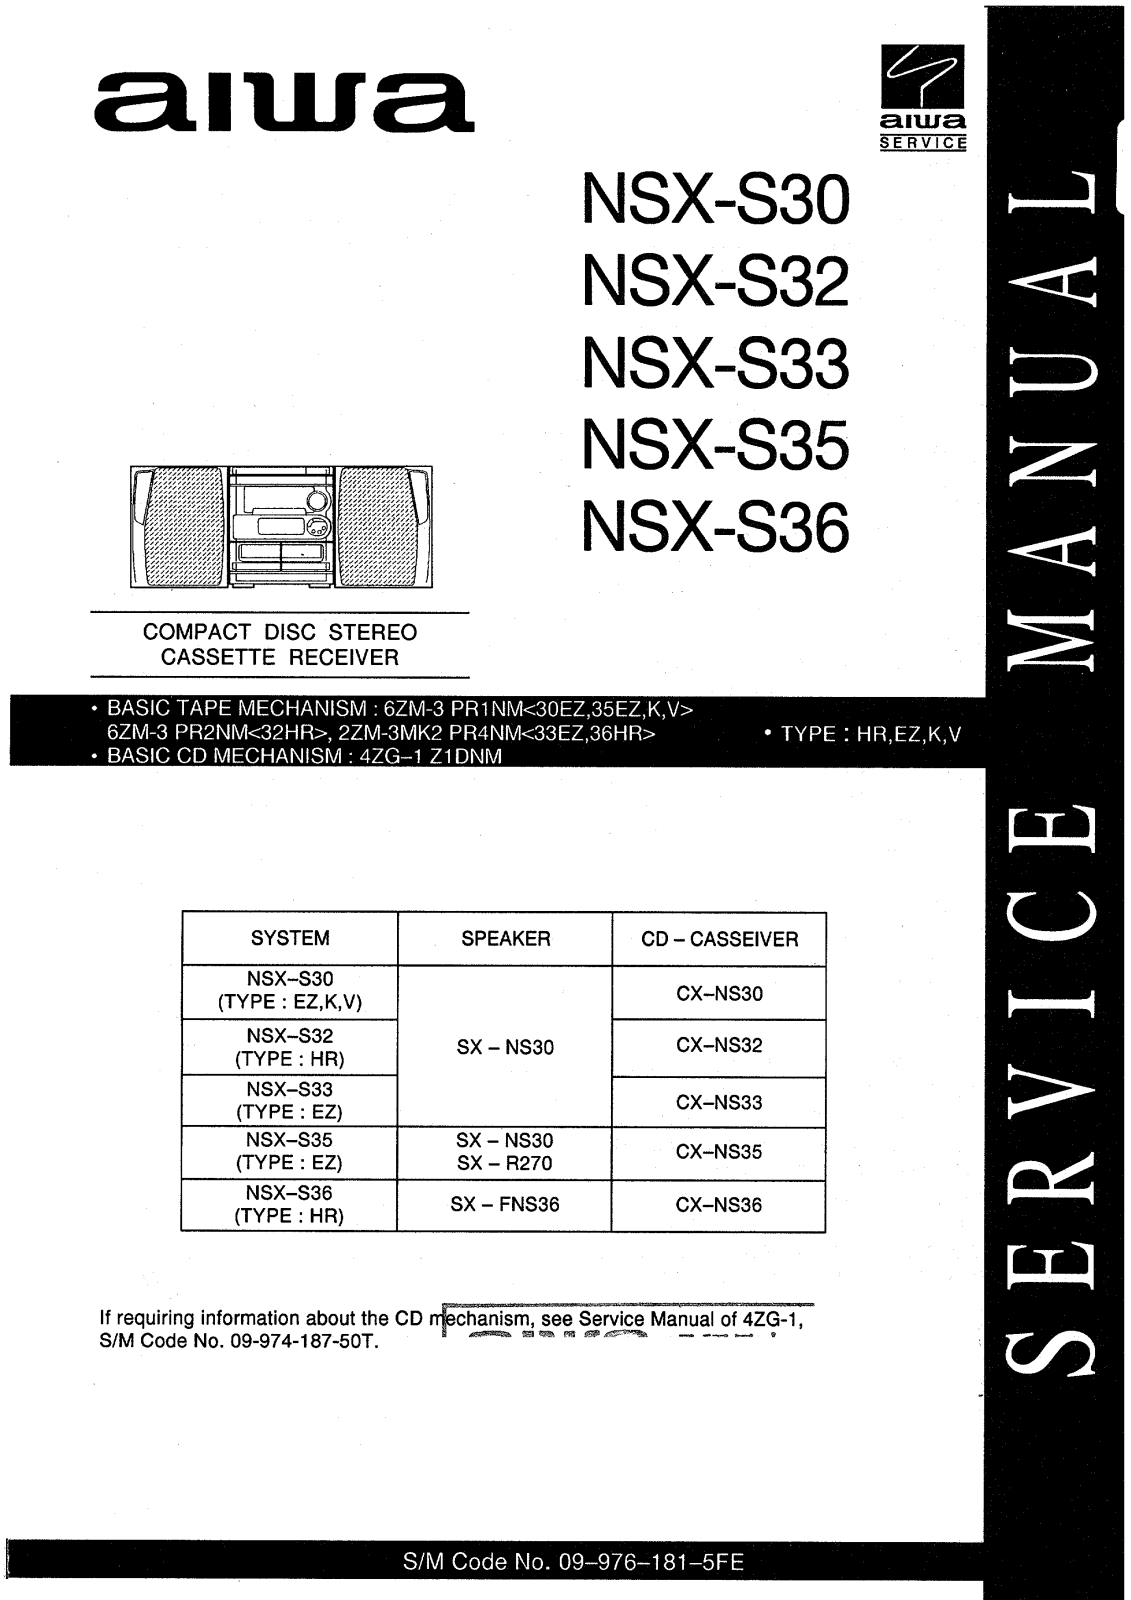 Aiwa NSXS-30, NSXS-32, NSXS-33, NSXS-35, NSXS-36 Service manual